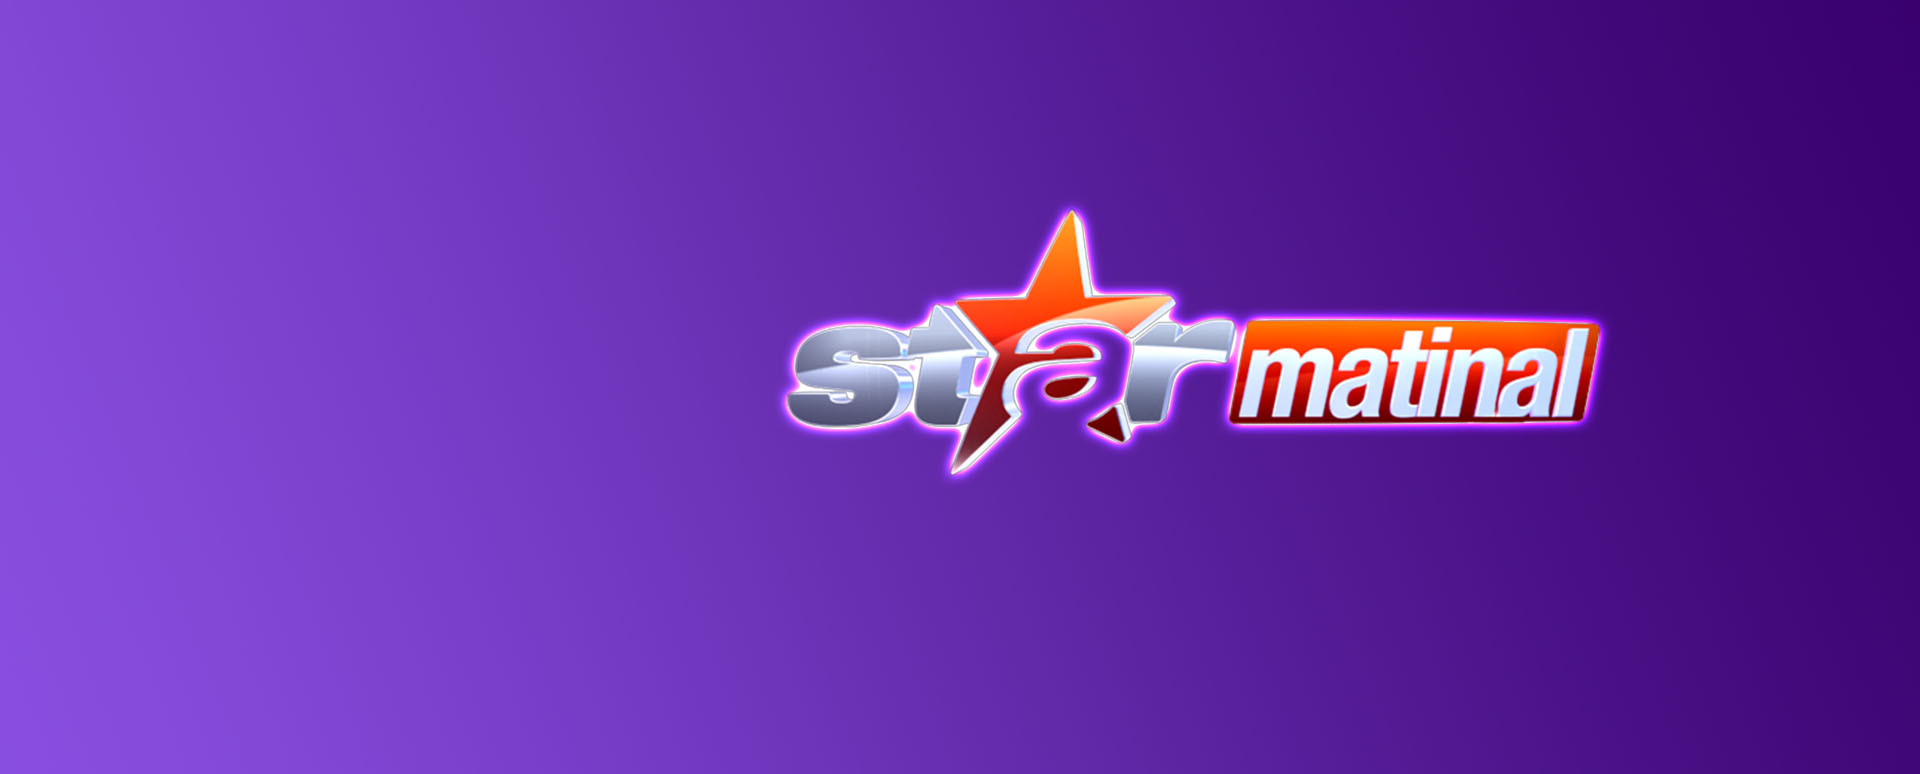 te rog nu captură strategie  Vezi emisiunea Star Matinal | AntenaStars | Live și ediții complete